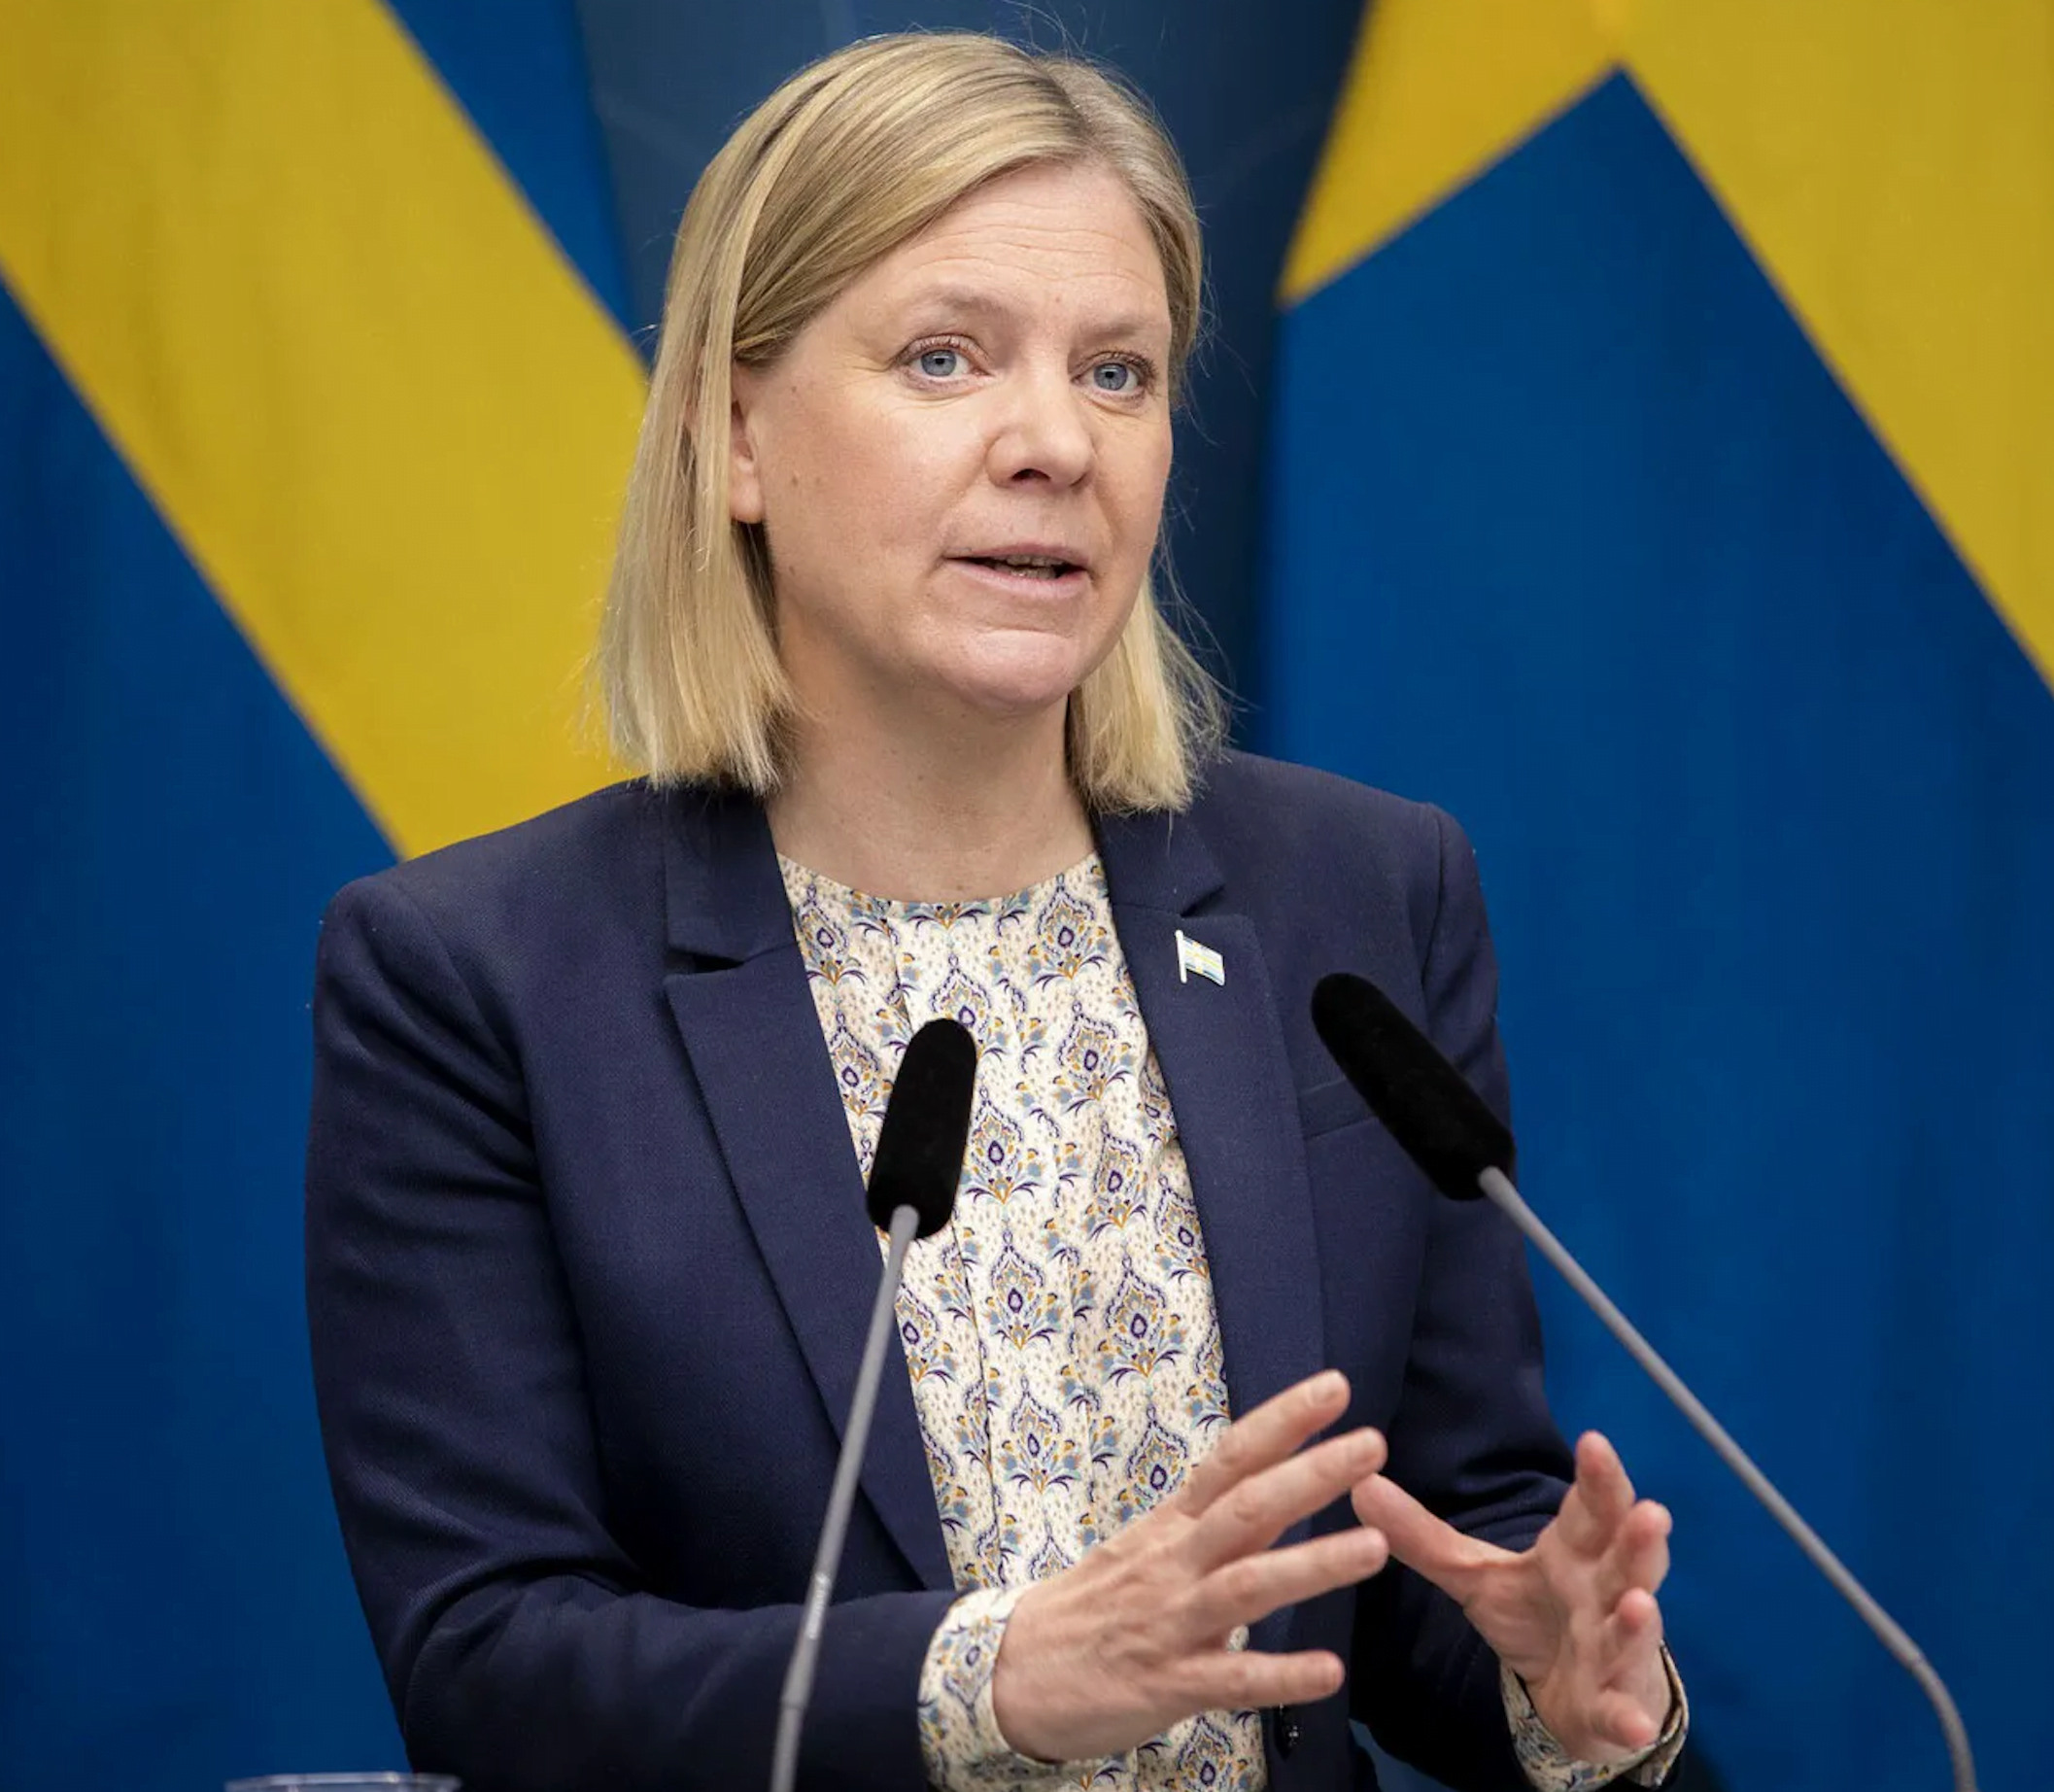 İsveç ve Finlandiya ittifaka üyelik için başvuru yapacaklarını açıkladı